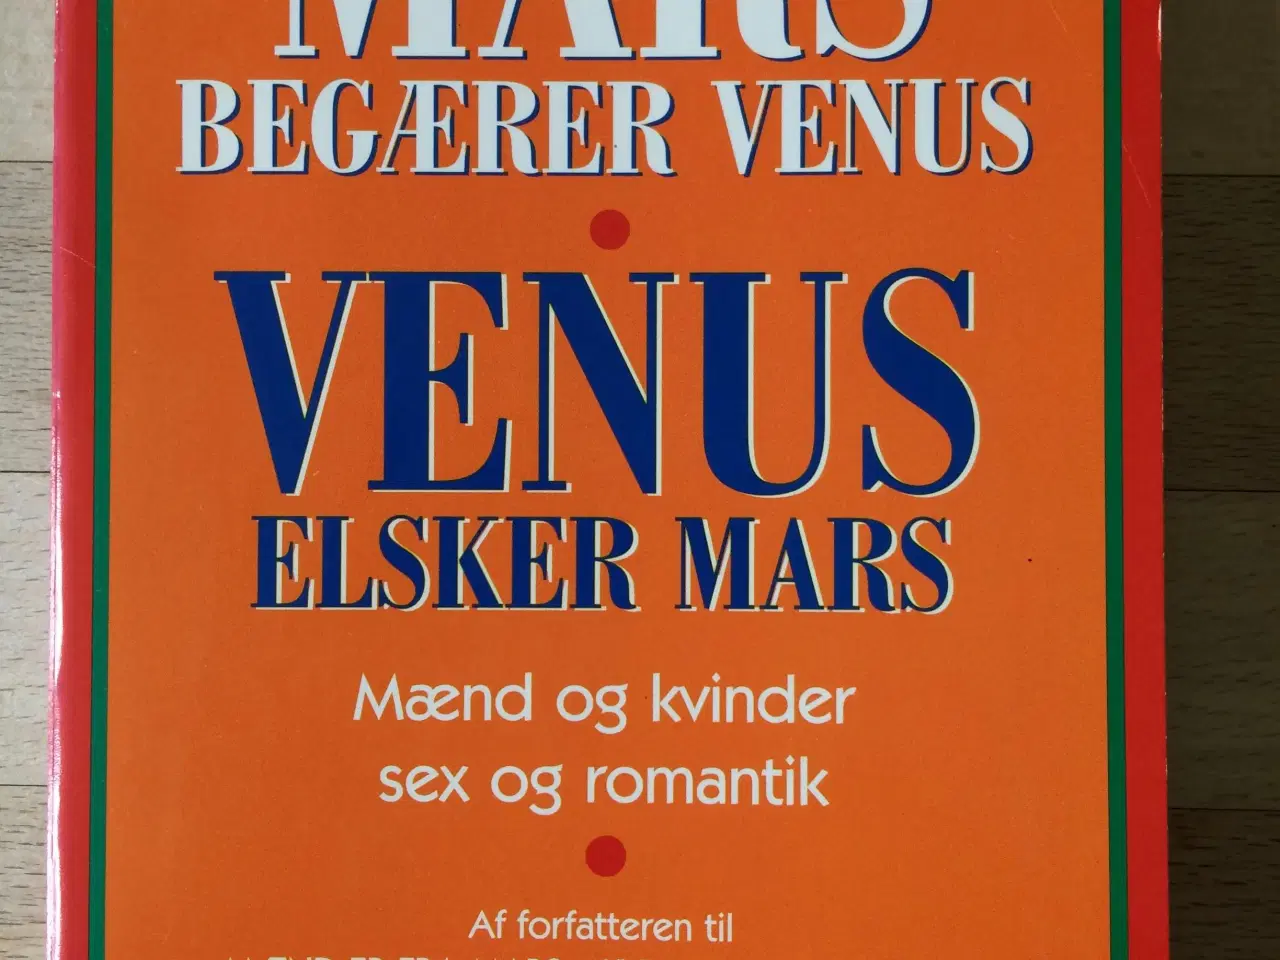 Billede 1 - Mars begærer Venus og Venus elsker Mars